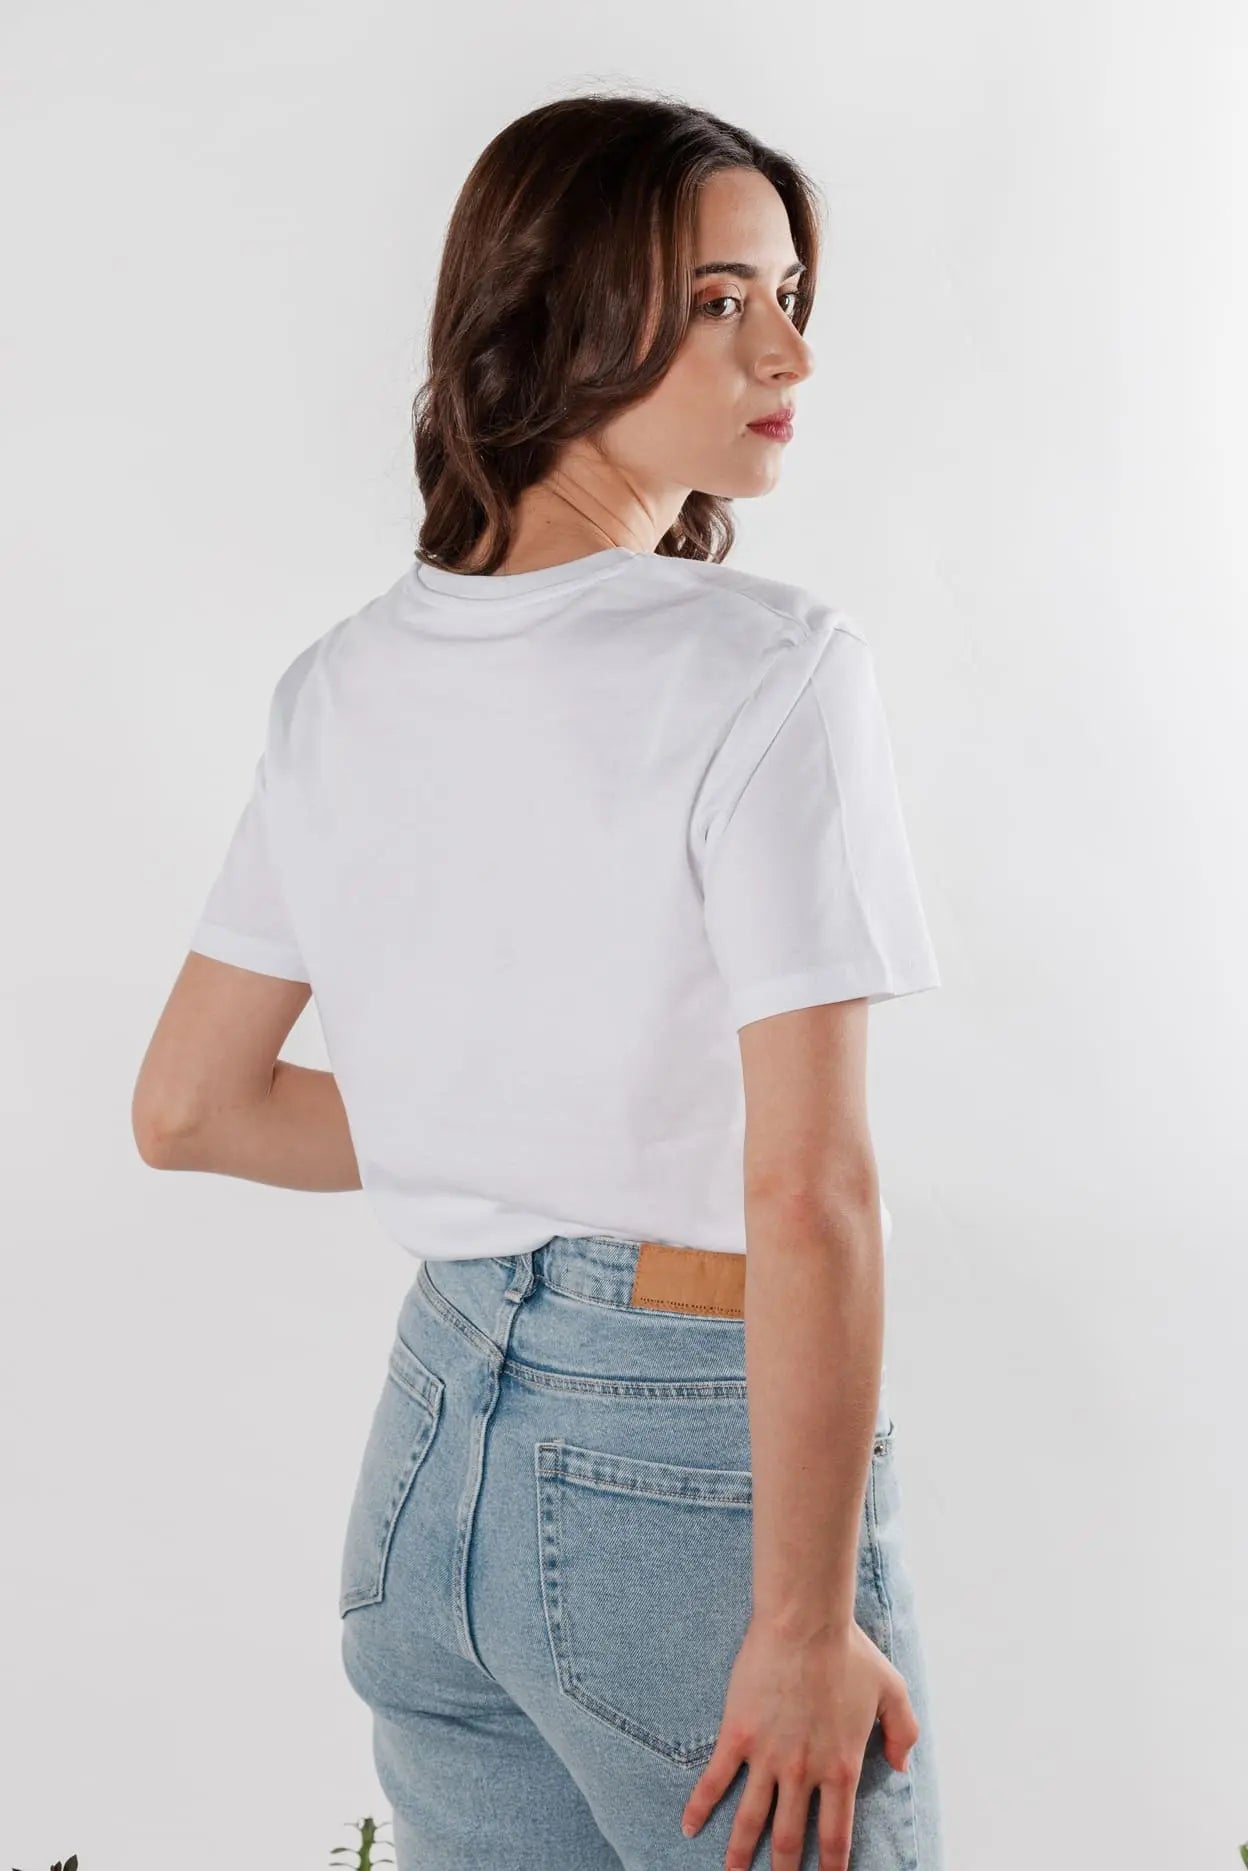 Camiseta blanca tejido 100% algodón ecológico. Estampados de la esencia Mexico